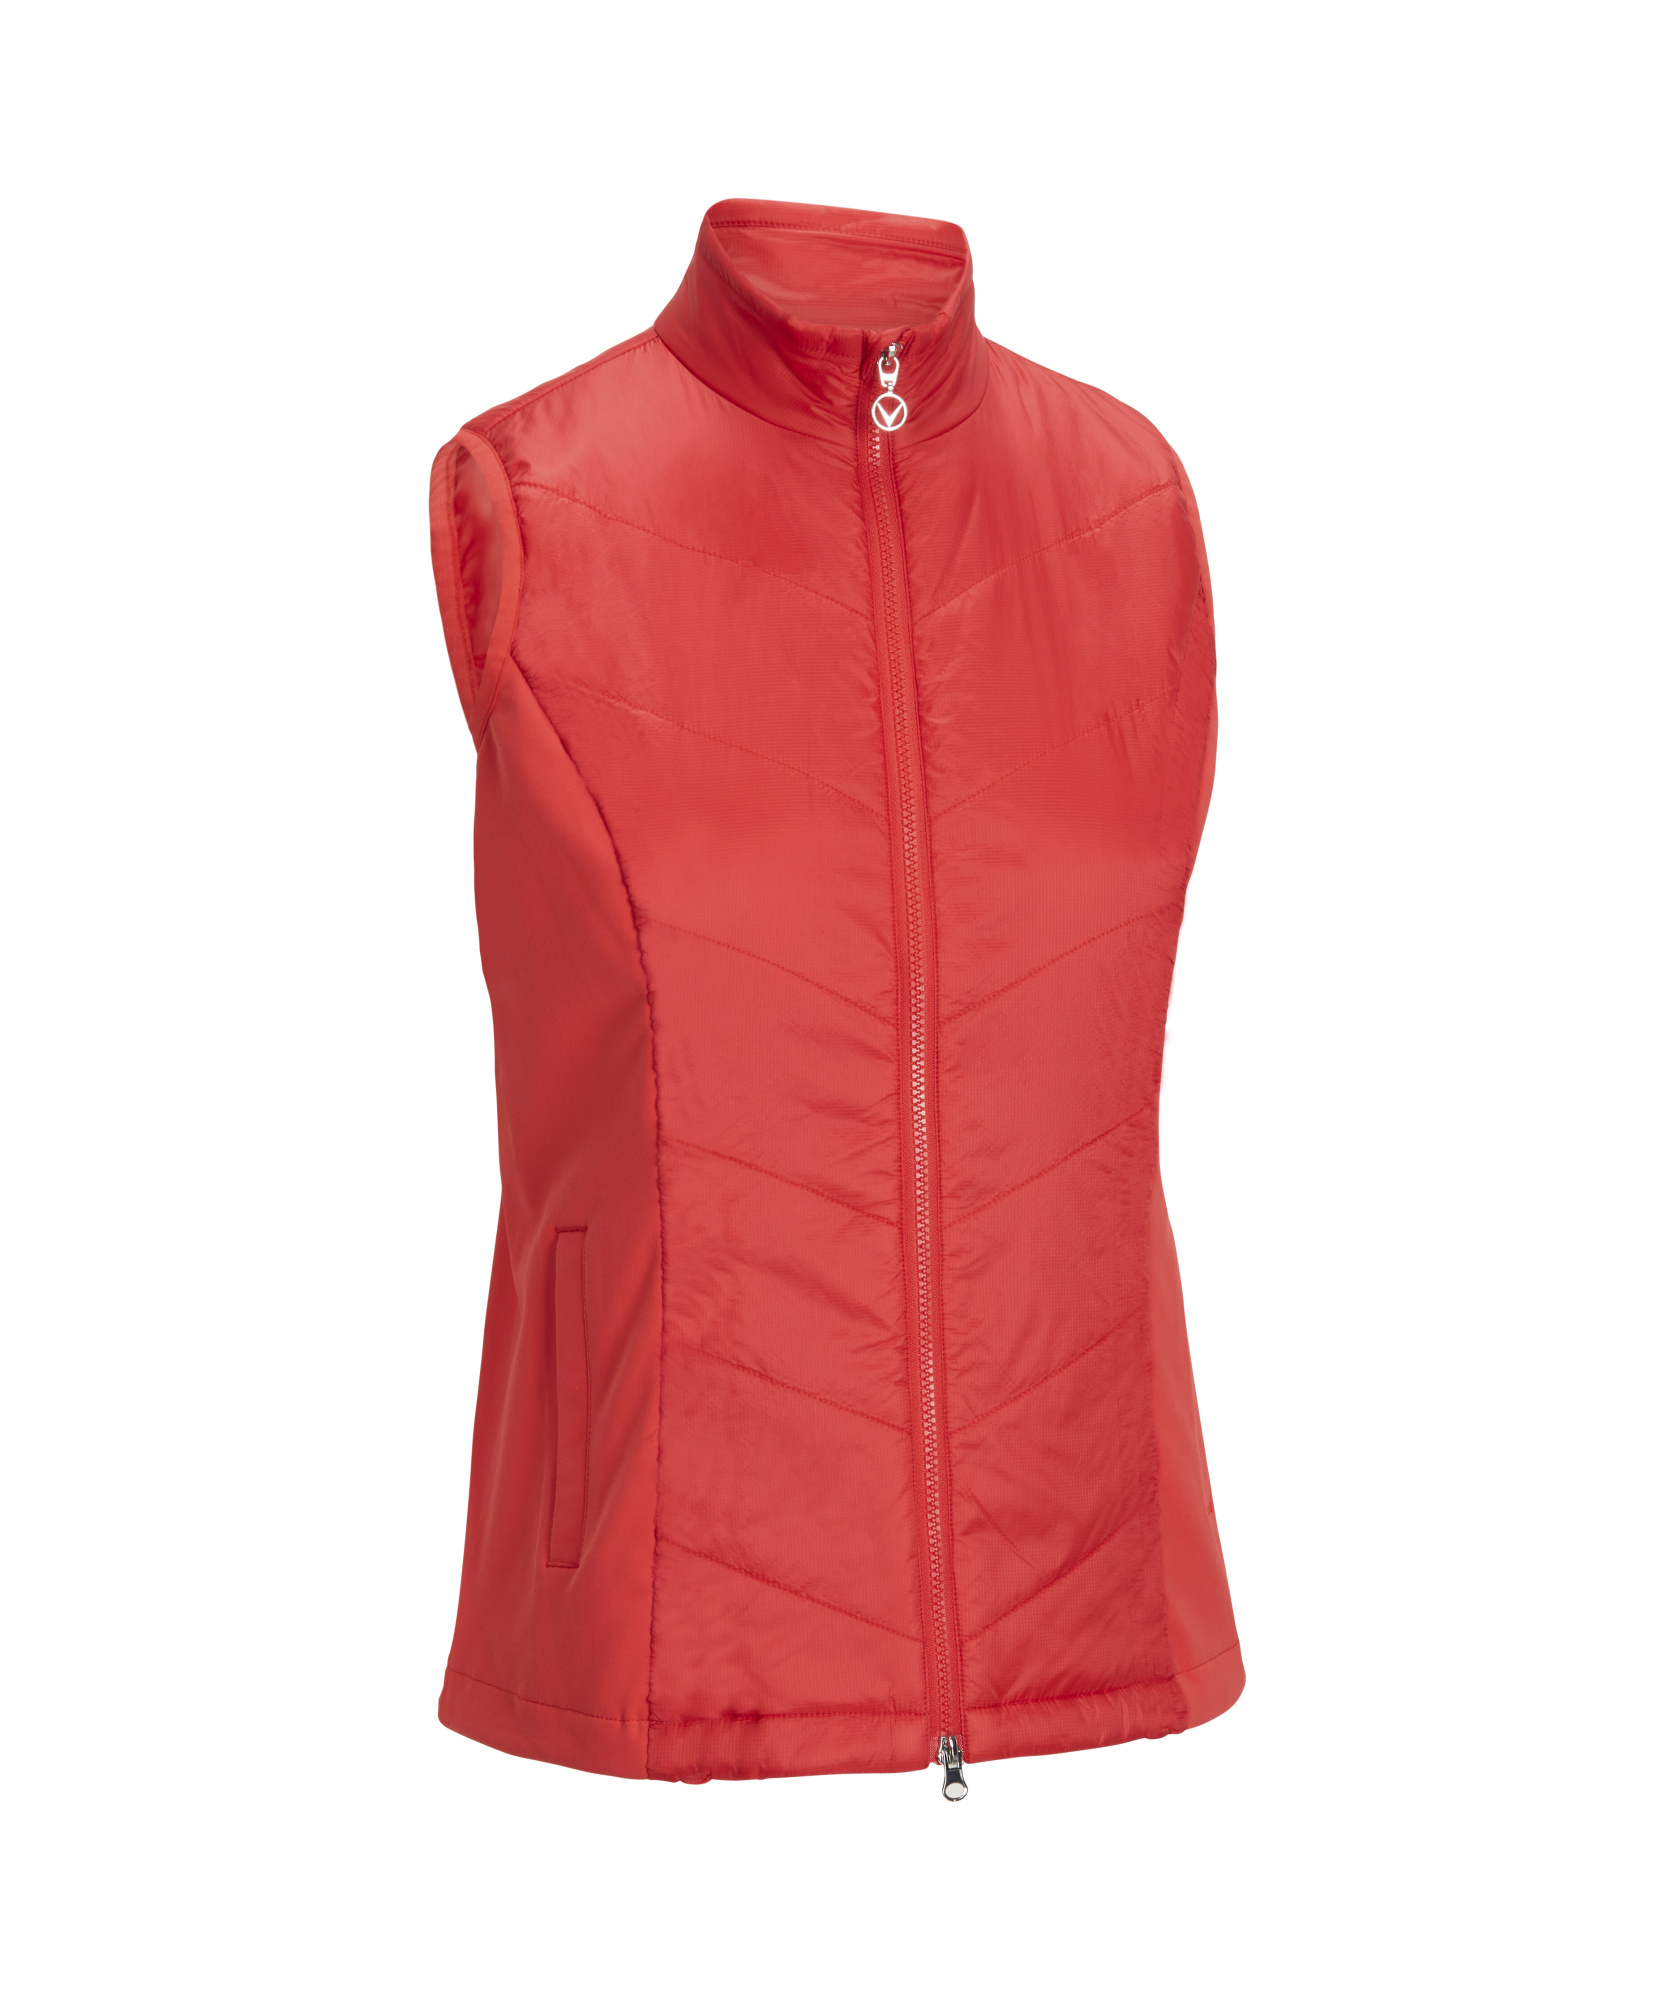 Levně Callaway Primaloft Quilted dámská golfová vesta, červená